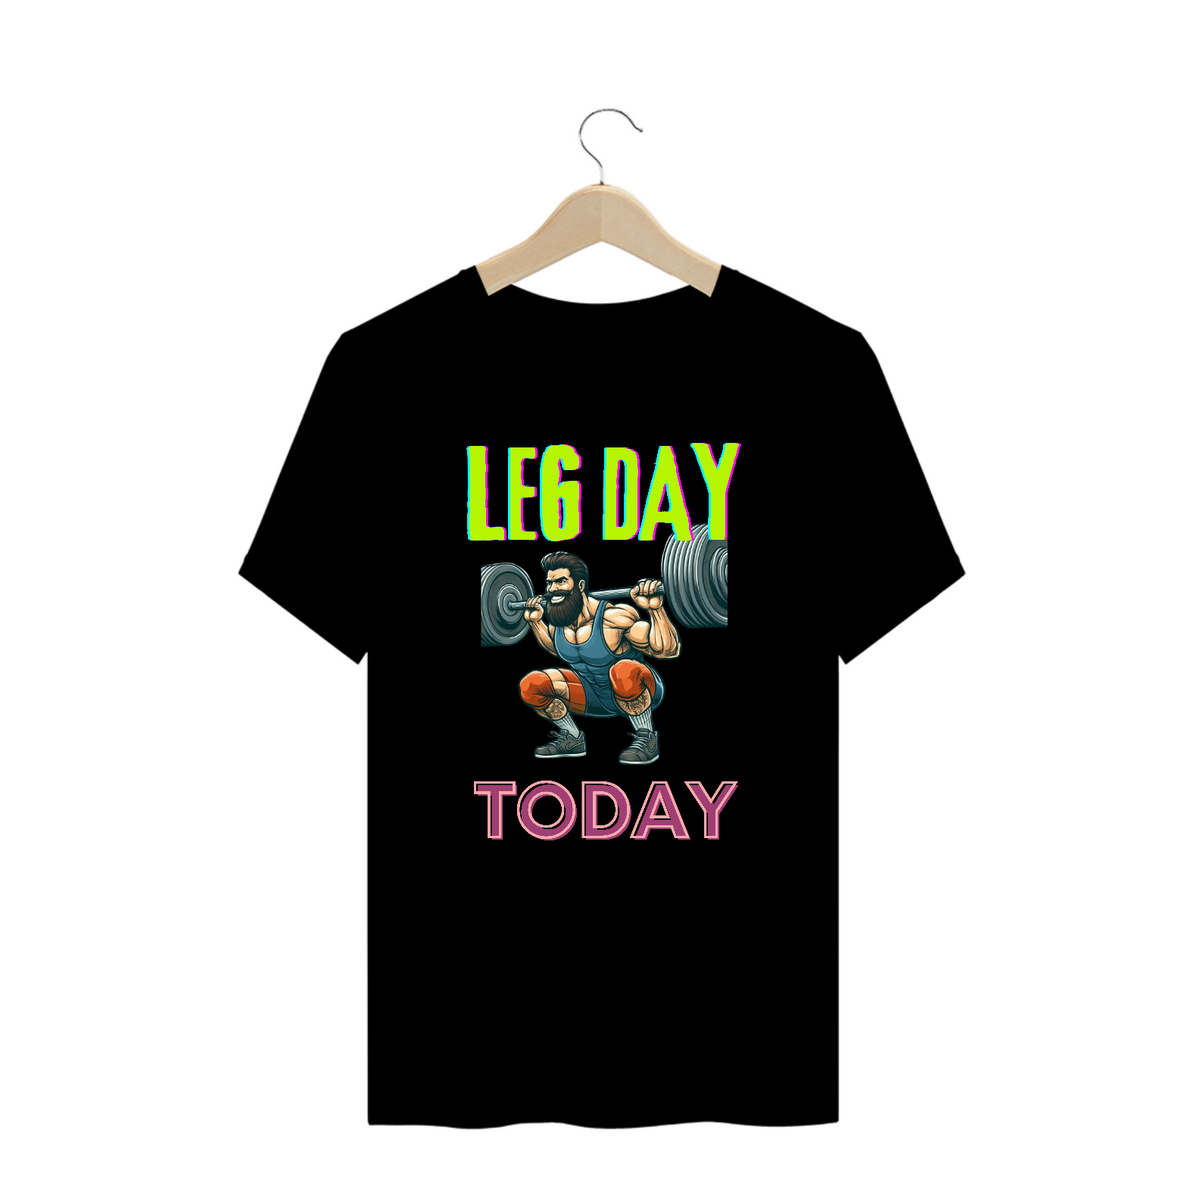 Nome do produto: Camiseta Legday today ESTAMPA FRENTE PLUS SIZE